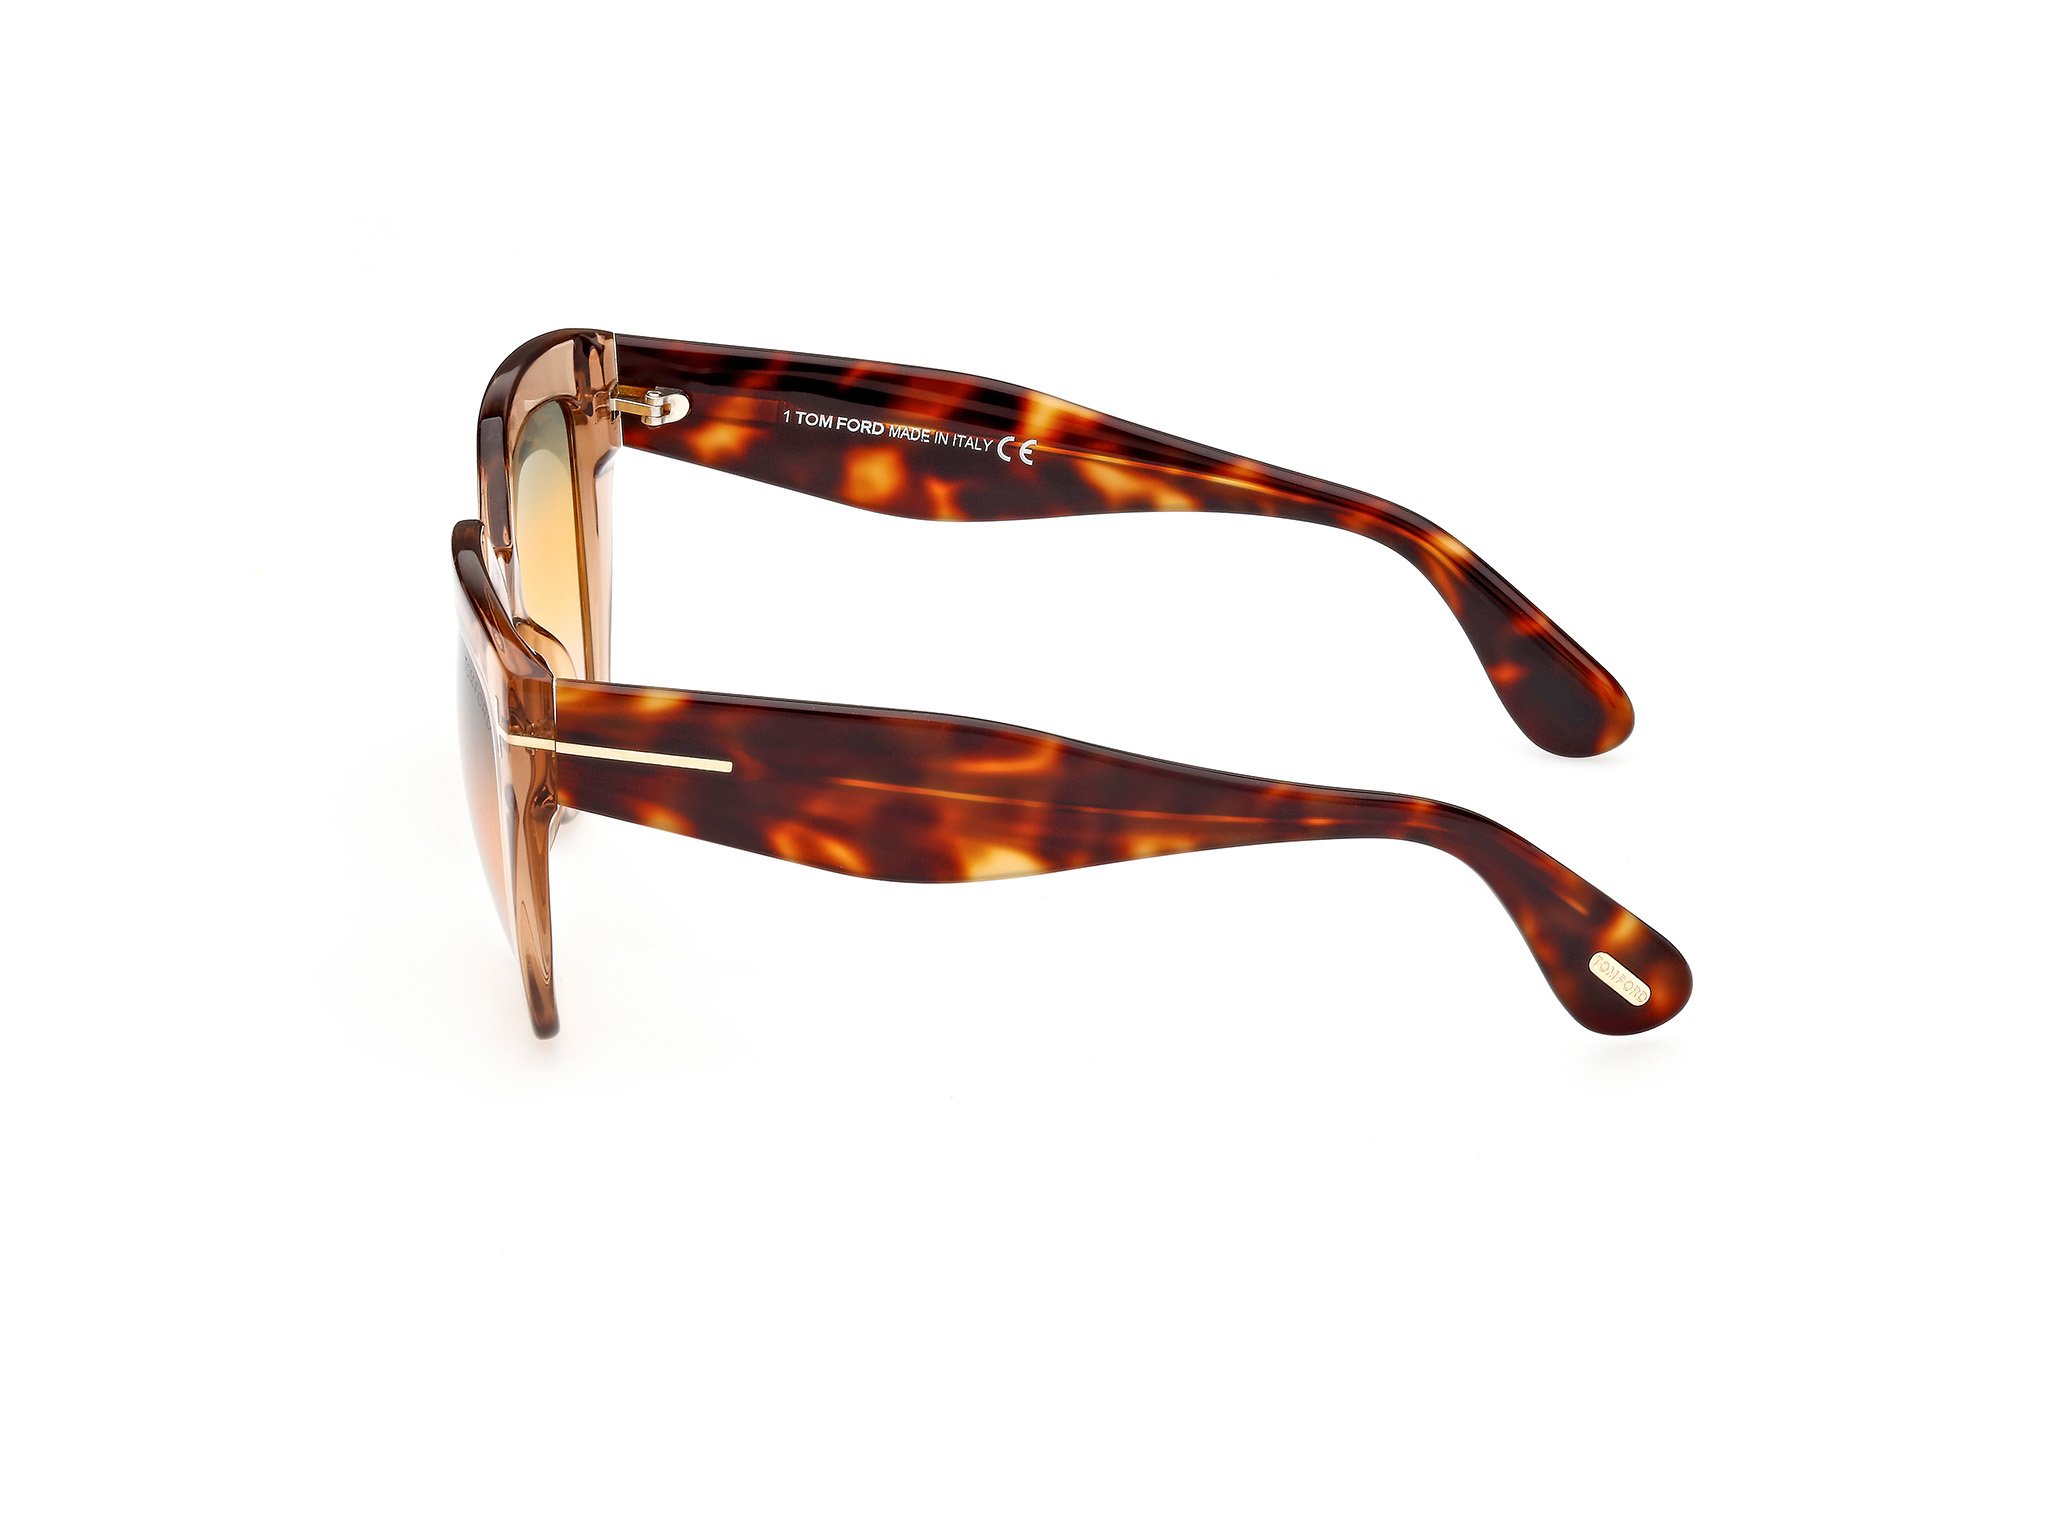 Das Bild zeigt die Sonnenbrille FT0939 45B von der Marke Tom Ford in havana.